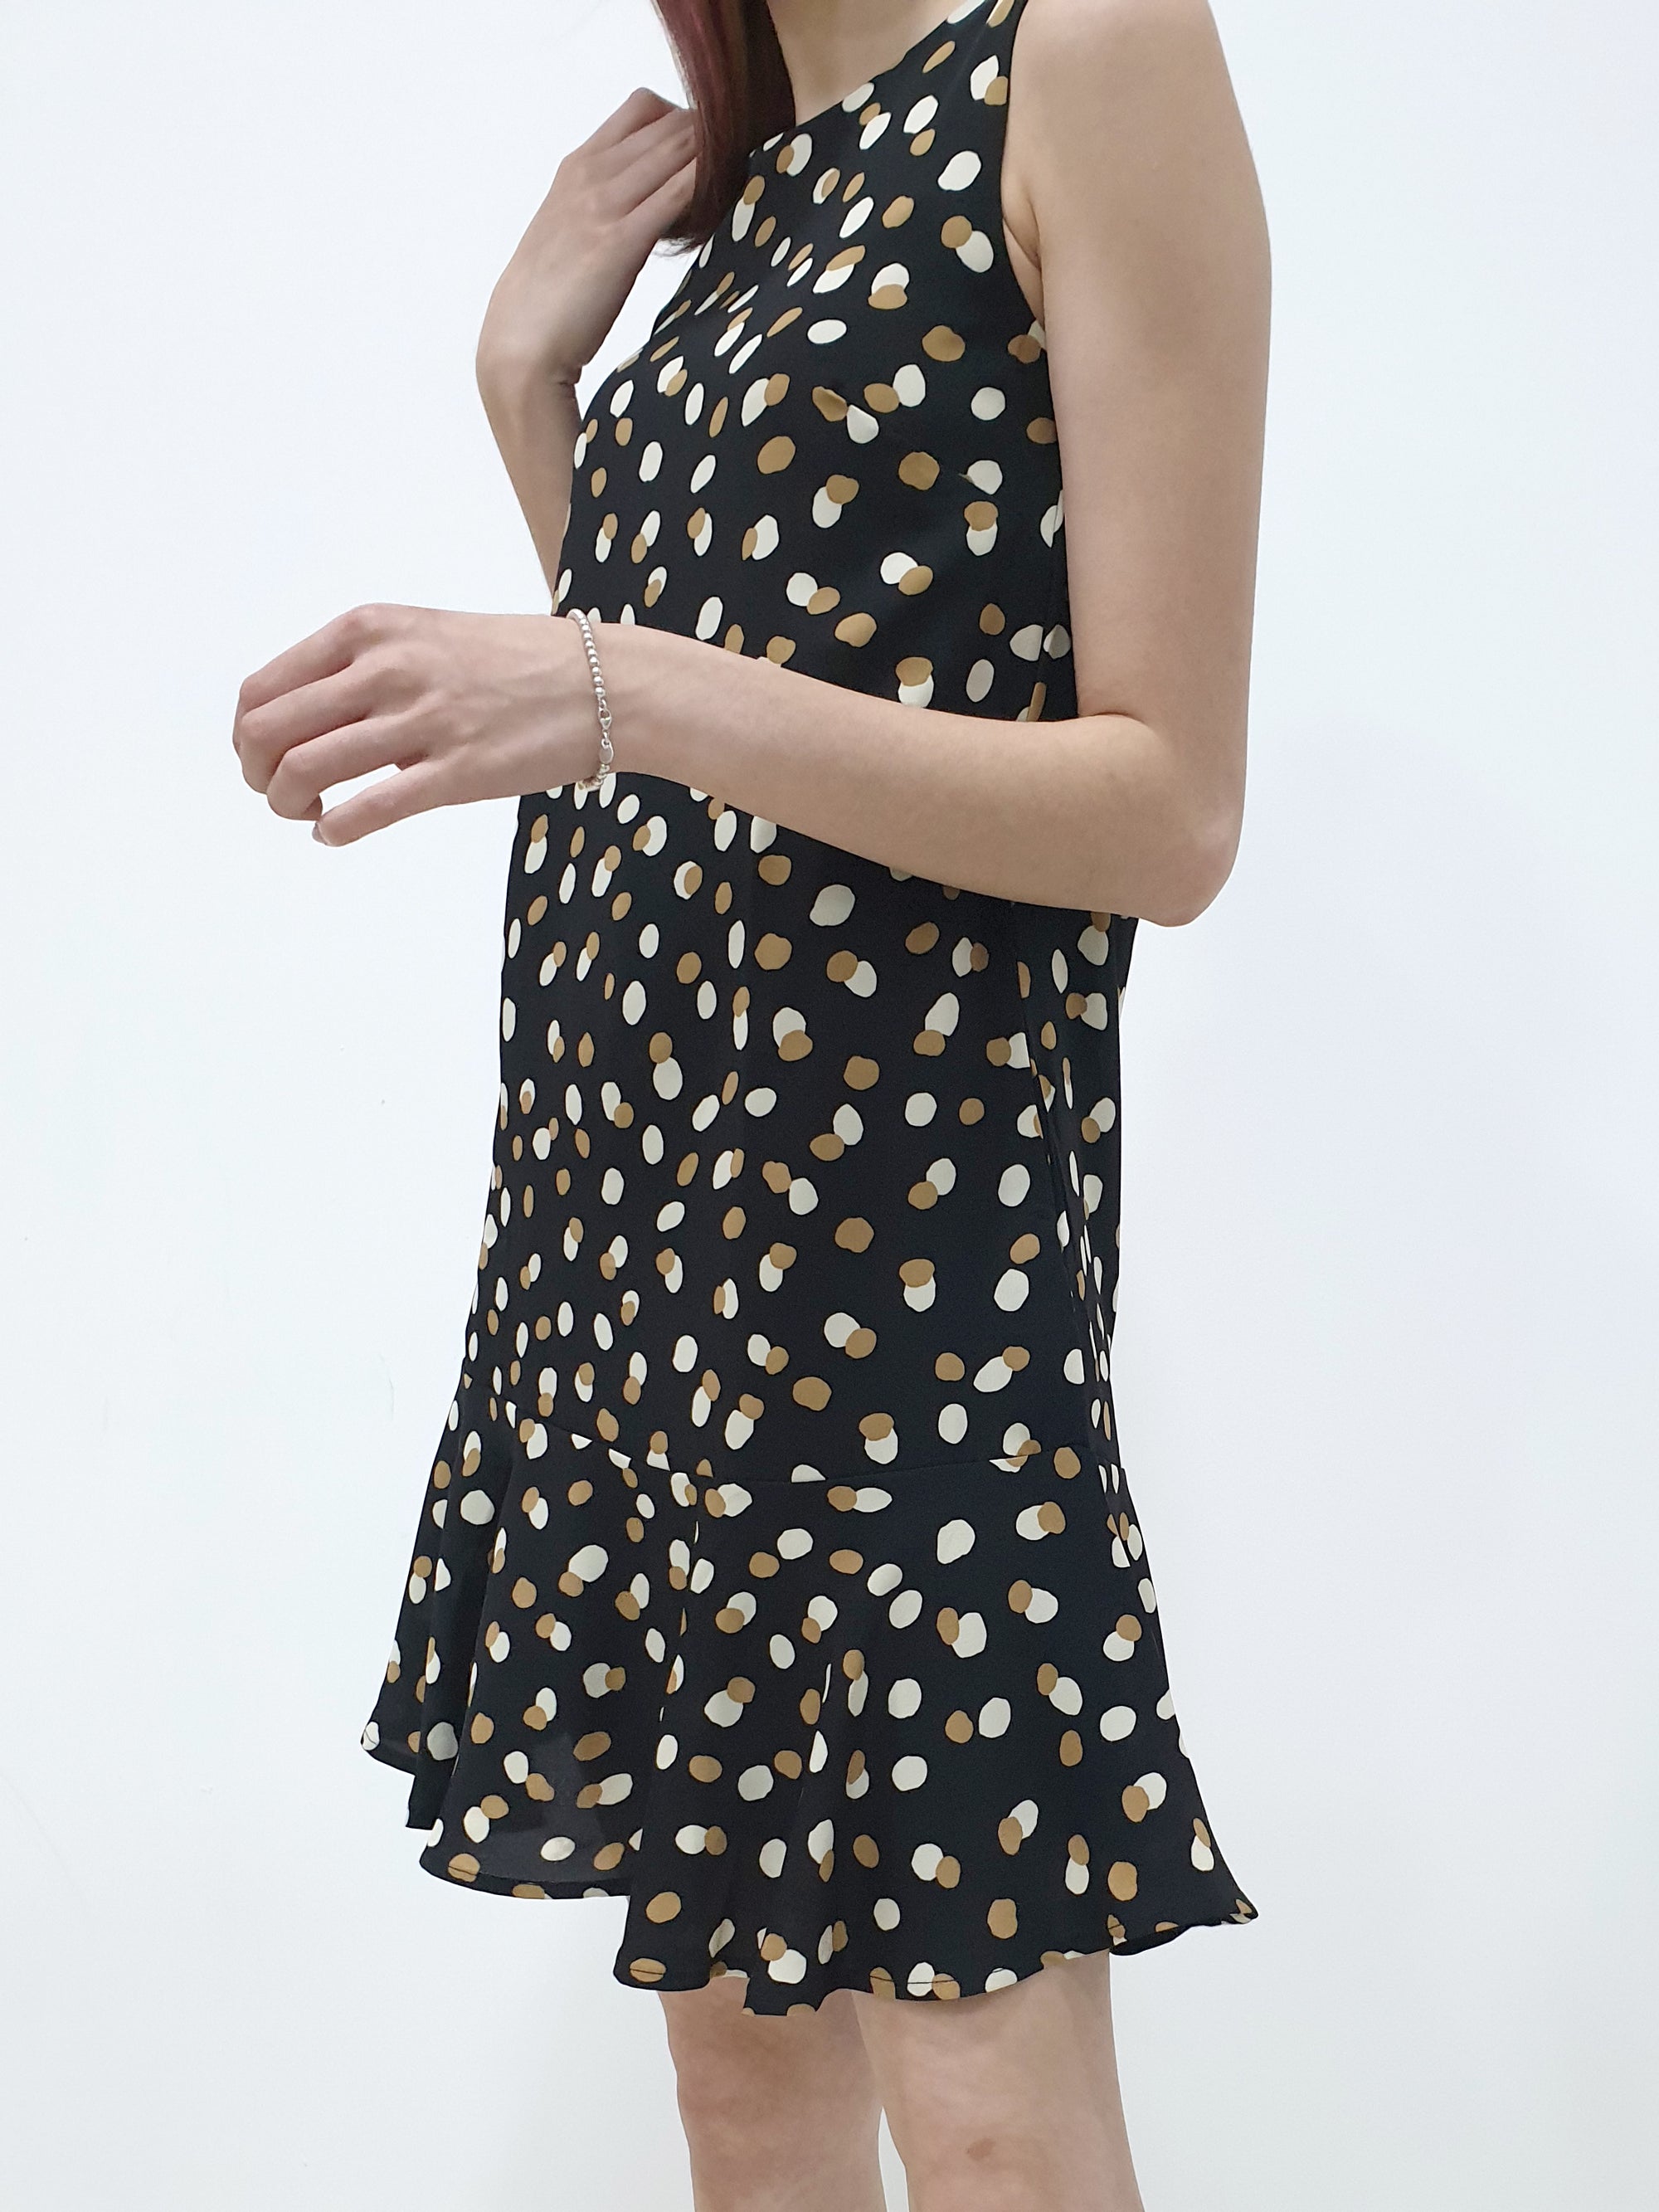 Dot Dot Ruffles Dress (Non-returnable) - Ferlicious